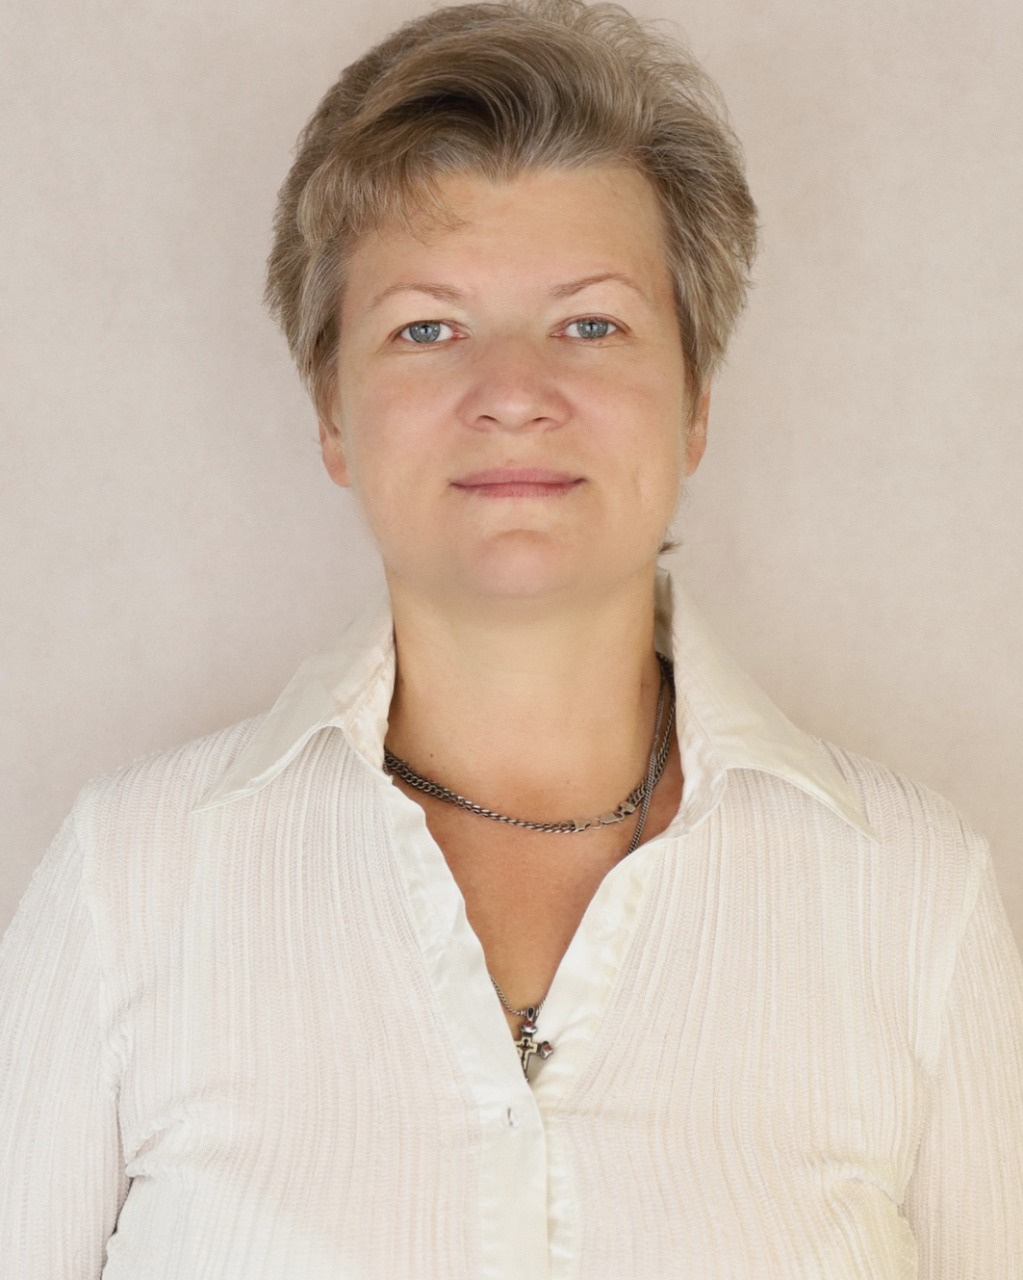 Полупан Людмила Ивановна — очень опытный логопед-дефектолог, она поможет всем деткам